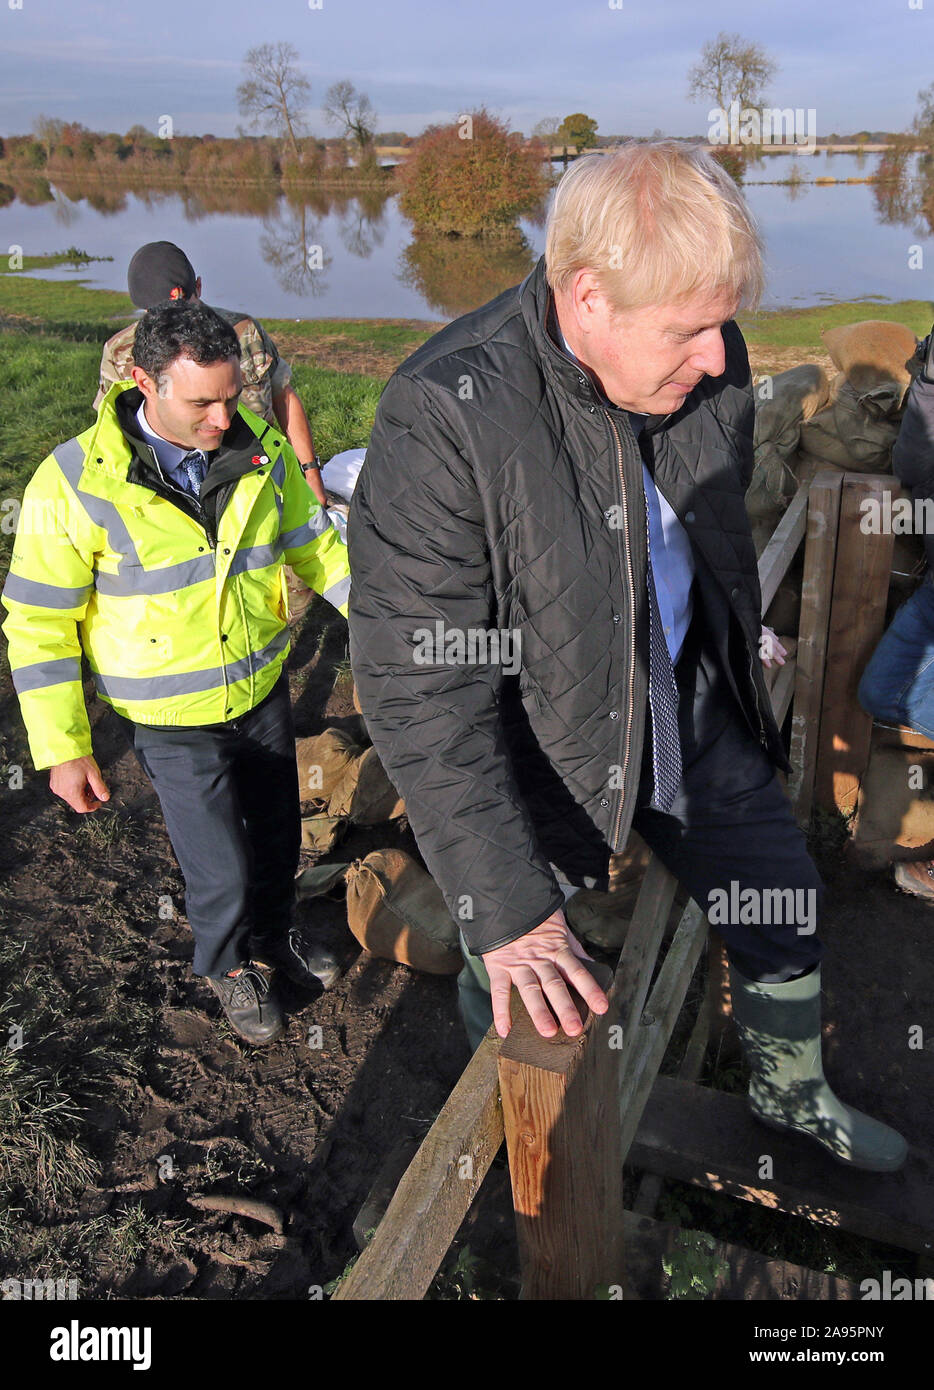 Oliver Harmar, Yorkshire Directrice de secteur de l'Agence de l'environnement, des montres Premier ministre Boris Johnson escalader une clôture au cours d'une visite à Stainforth, Doncaster, à voir les récentes inondations. Banque D'Images